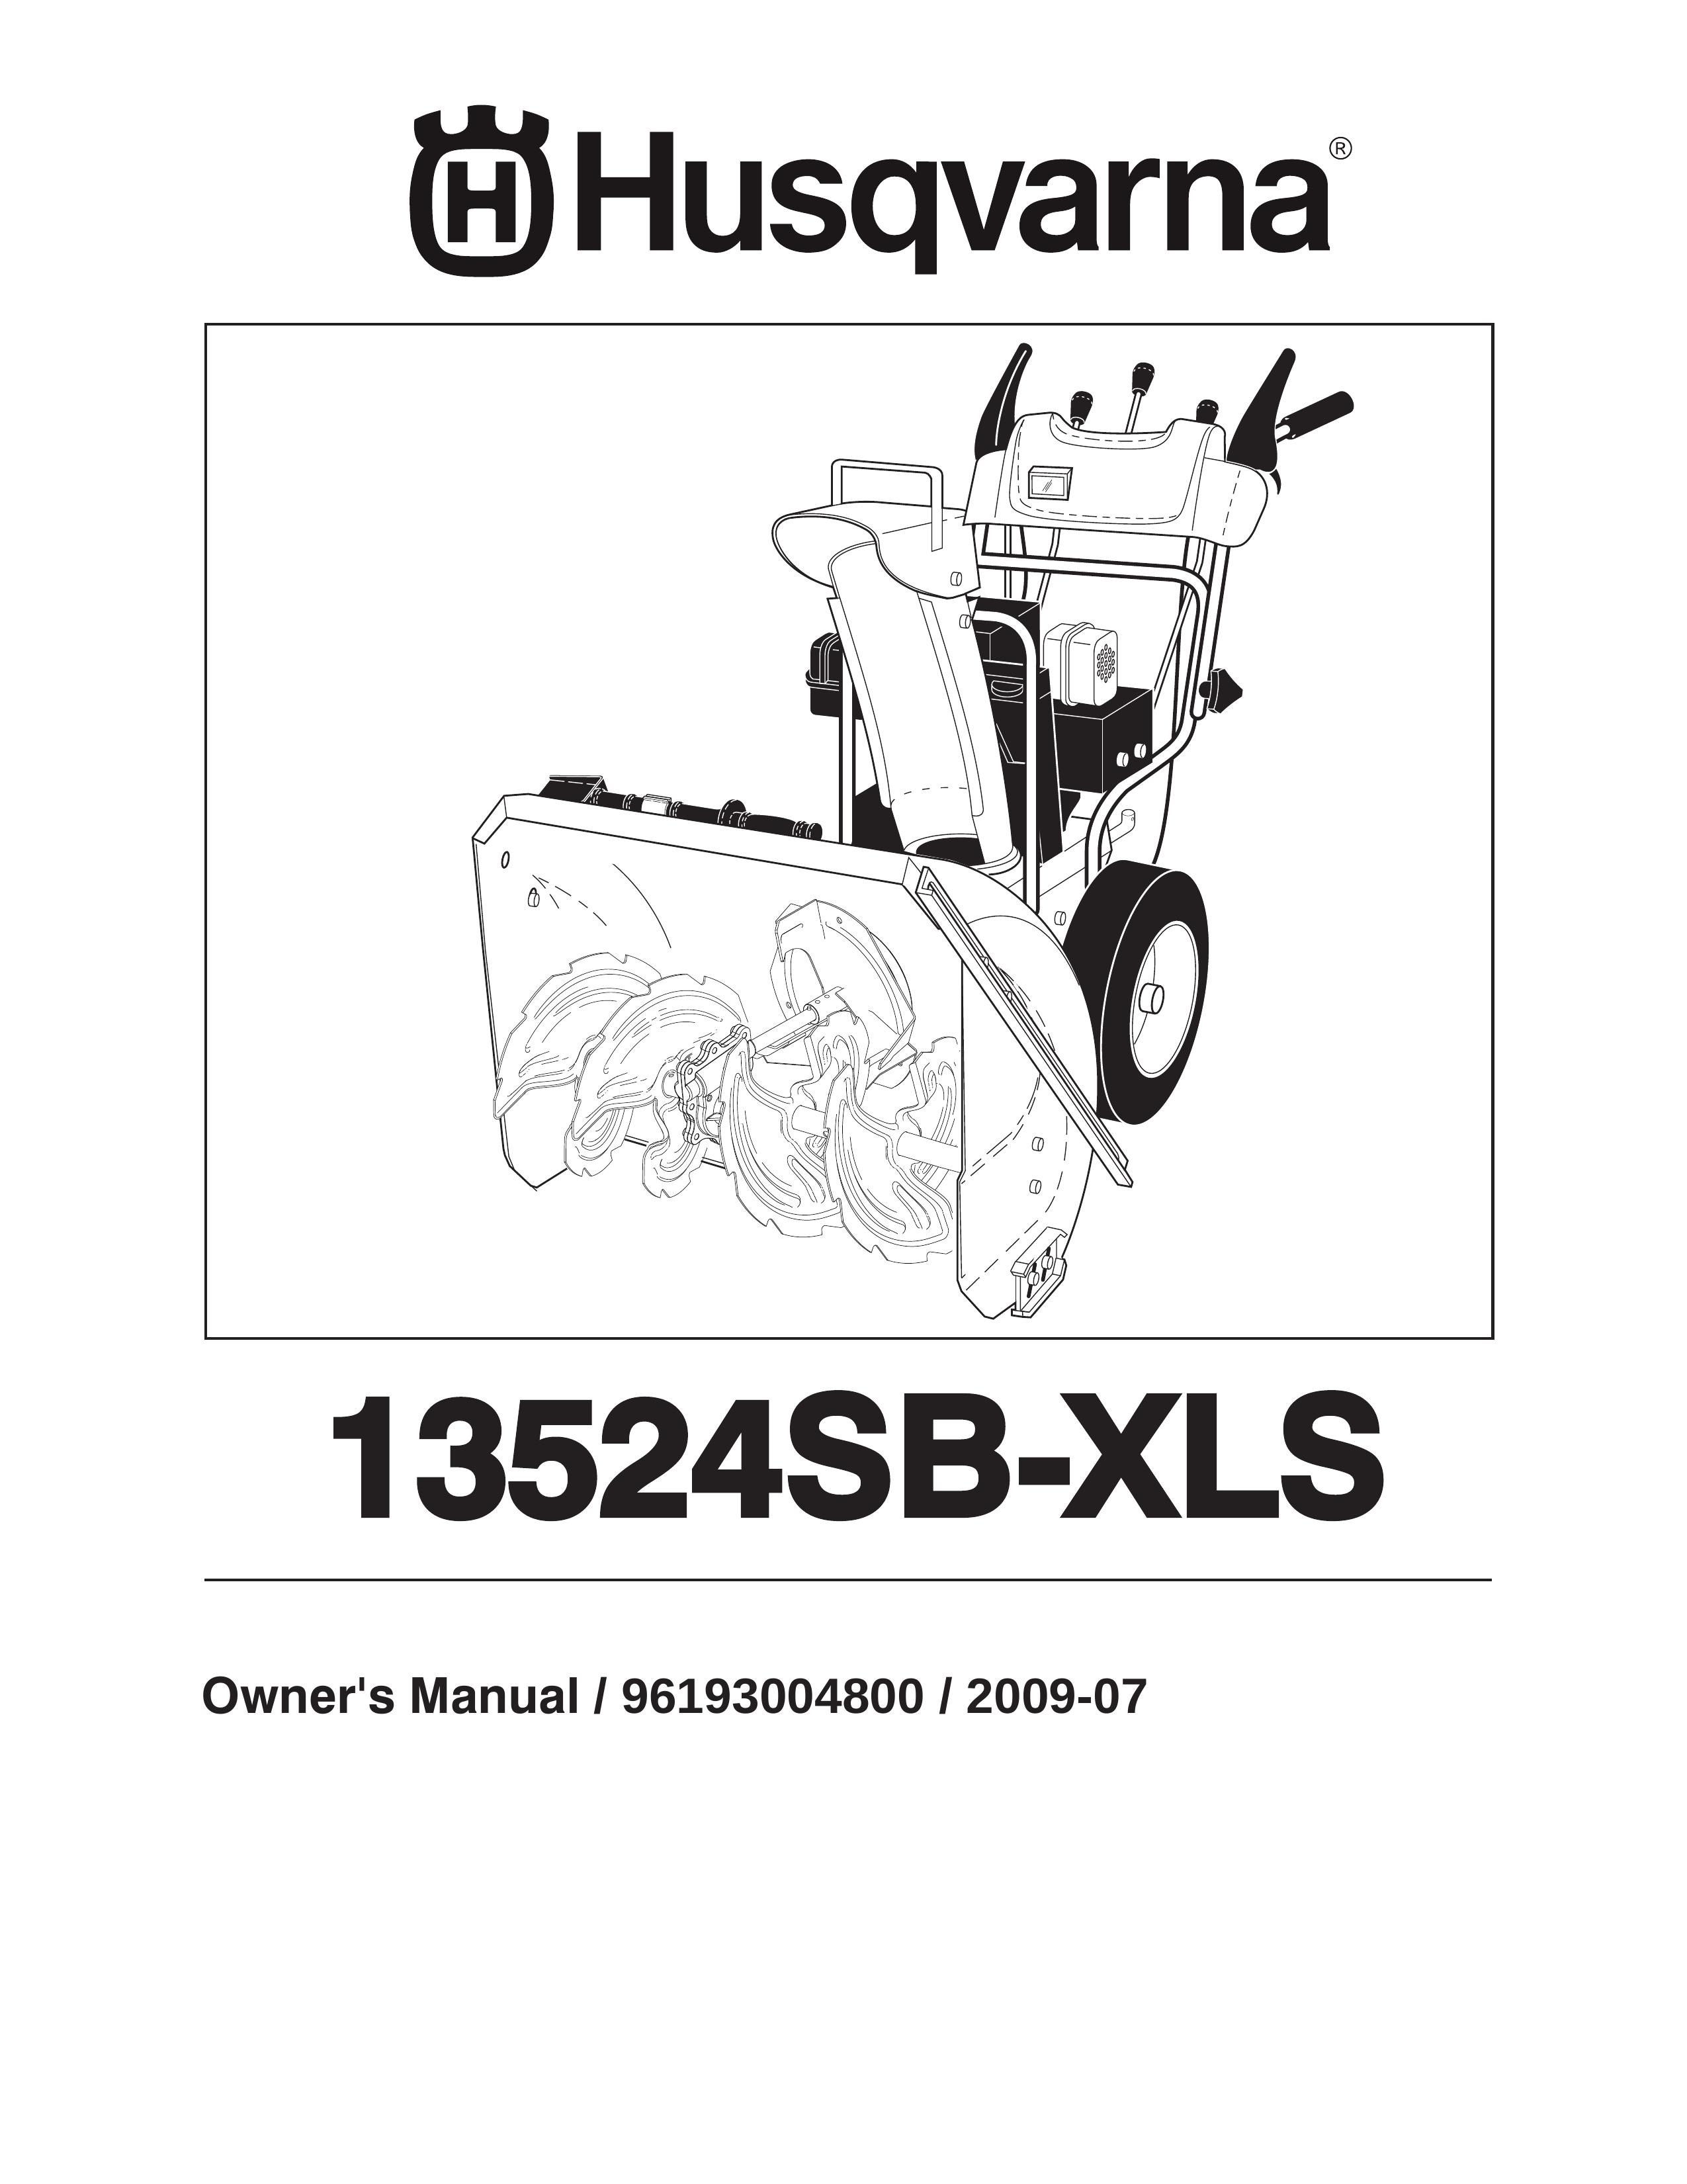 Husqvarna 13524SB-XLS Snow Blower User Manual